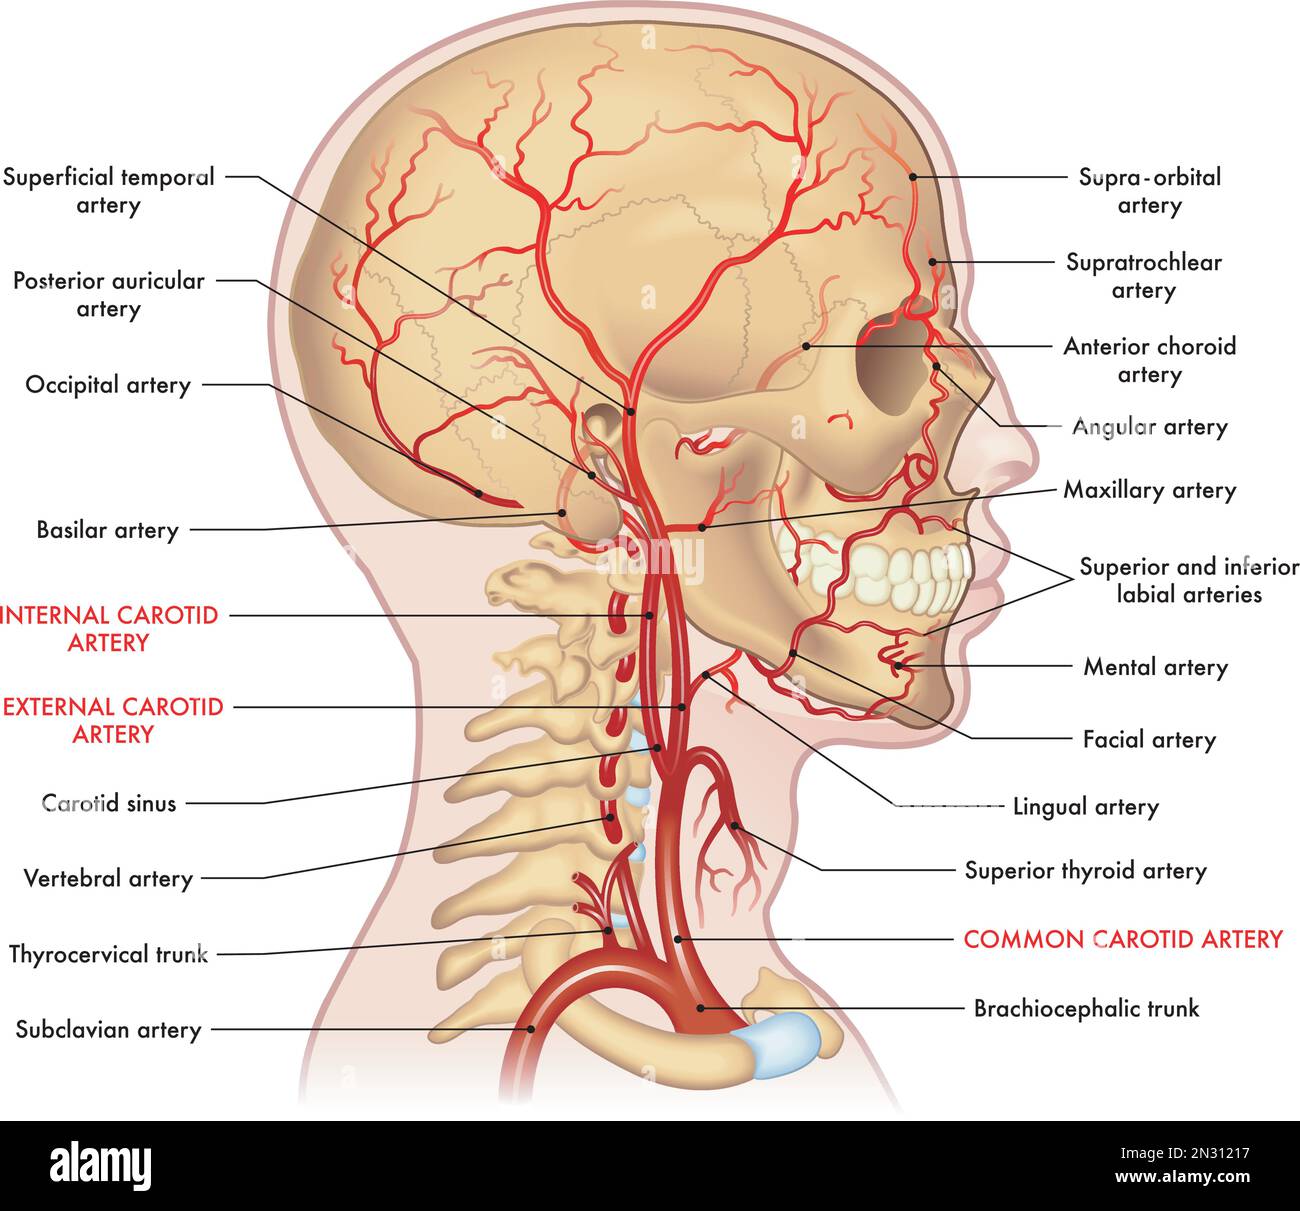 Illustrazione medica delle arterie principali della testa e del collo, con annotazioni. Illustrazione Vettoriale